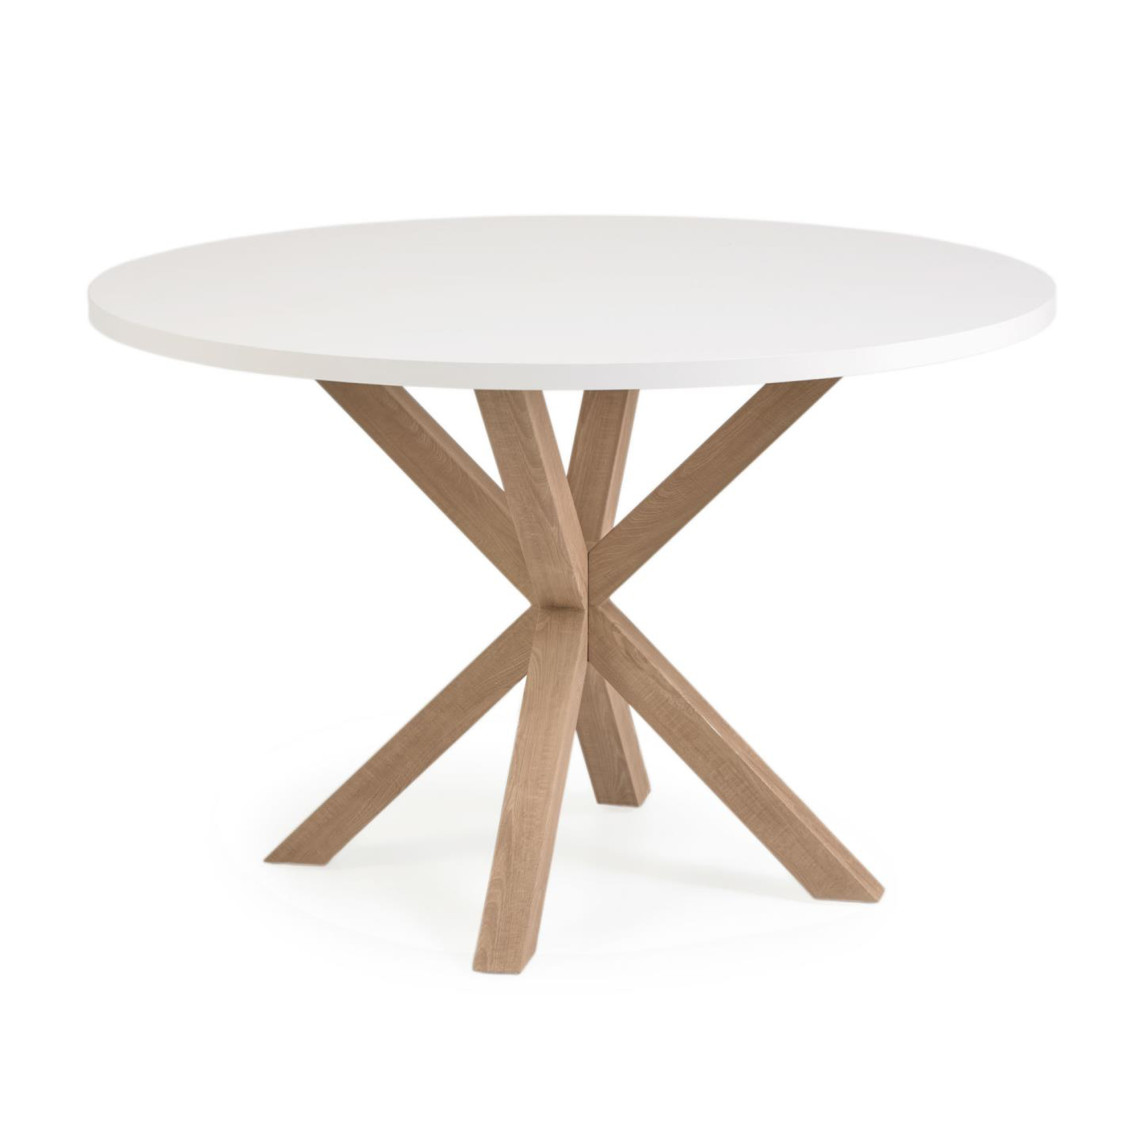 Spisebord A.R - Rund bordplade, Design Vit melaminskiva / Stålben med träfinish